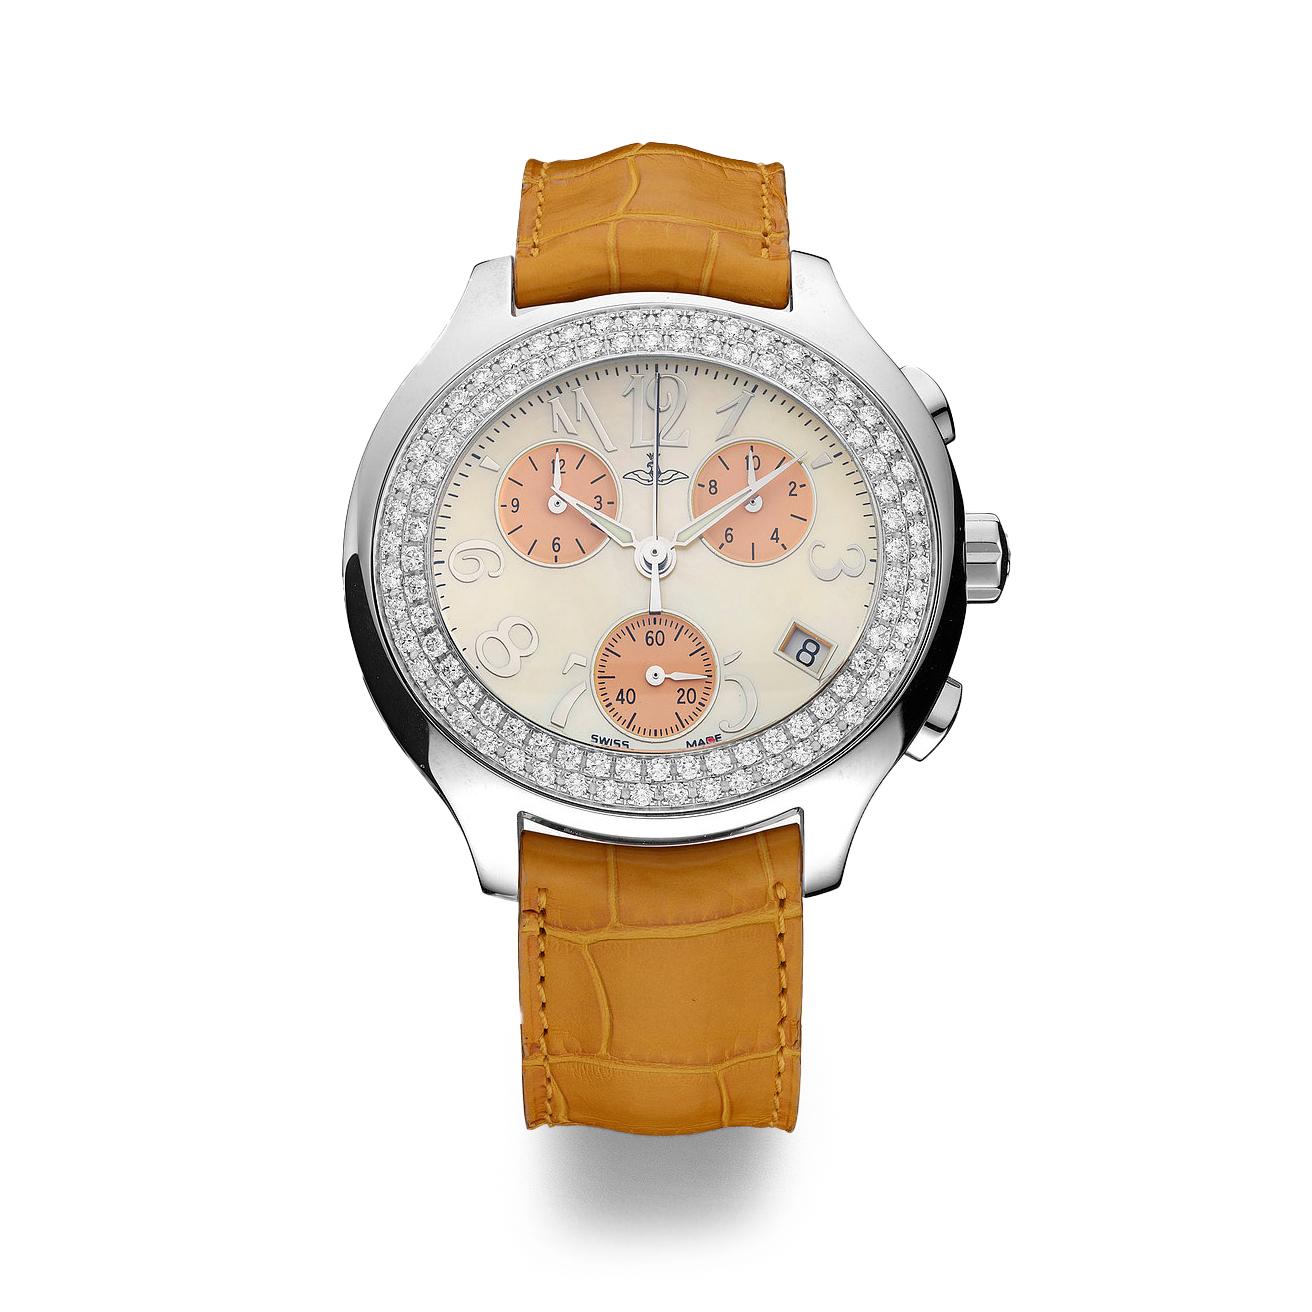 Montre chronographe en acier lunette sertie de 96 diamants 1,88 cts cadran en nacre orange, bracelet en alligator à boucle ardillon mouvement à quartz.